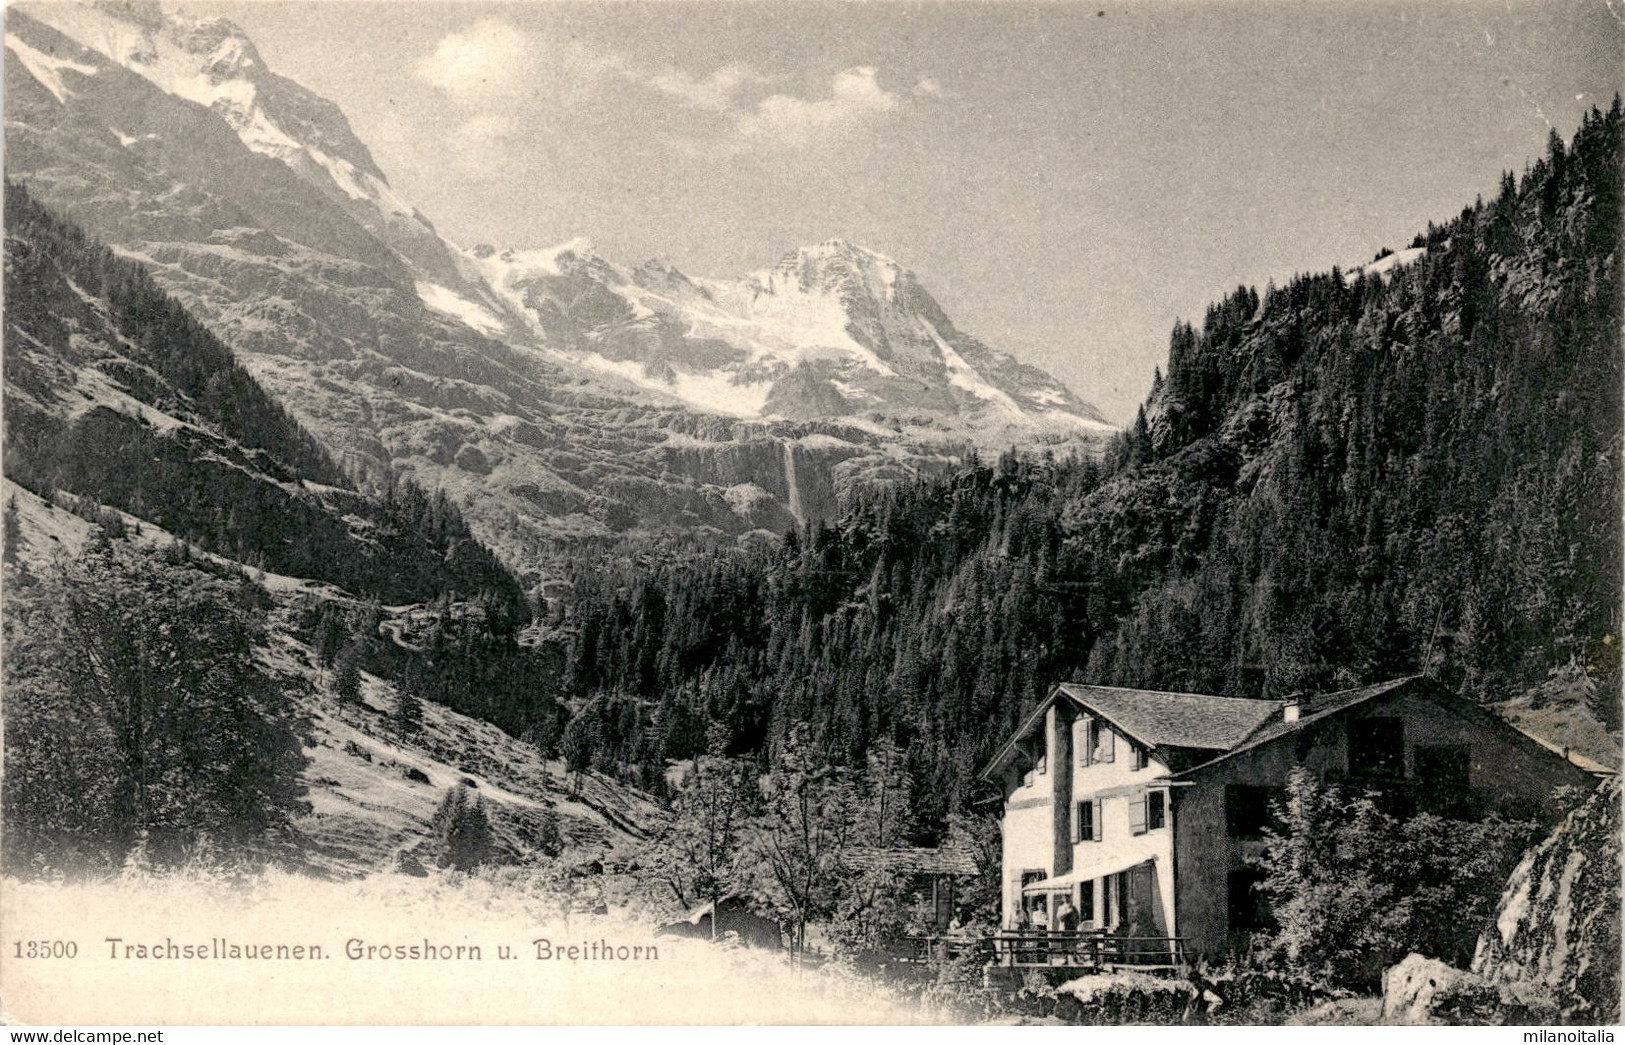 Trachsellauenen - Grosshorn U. Breithorn (13500) (b) - Lauenen